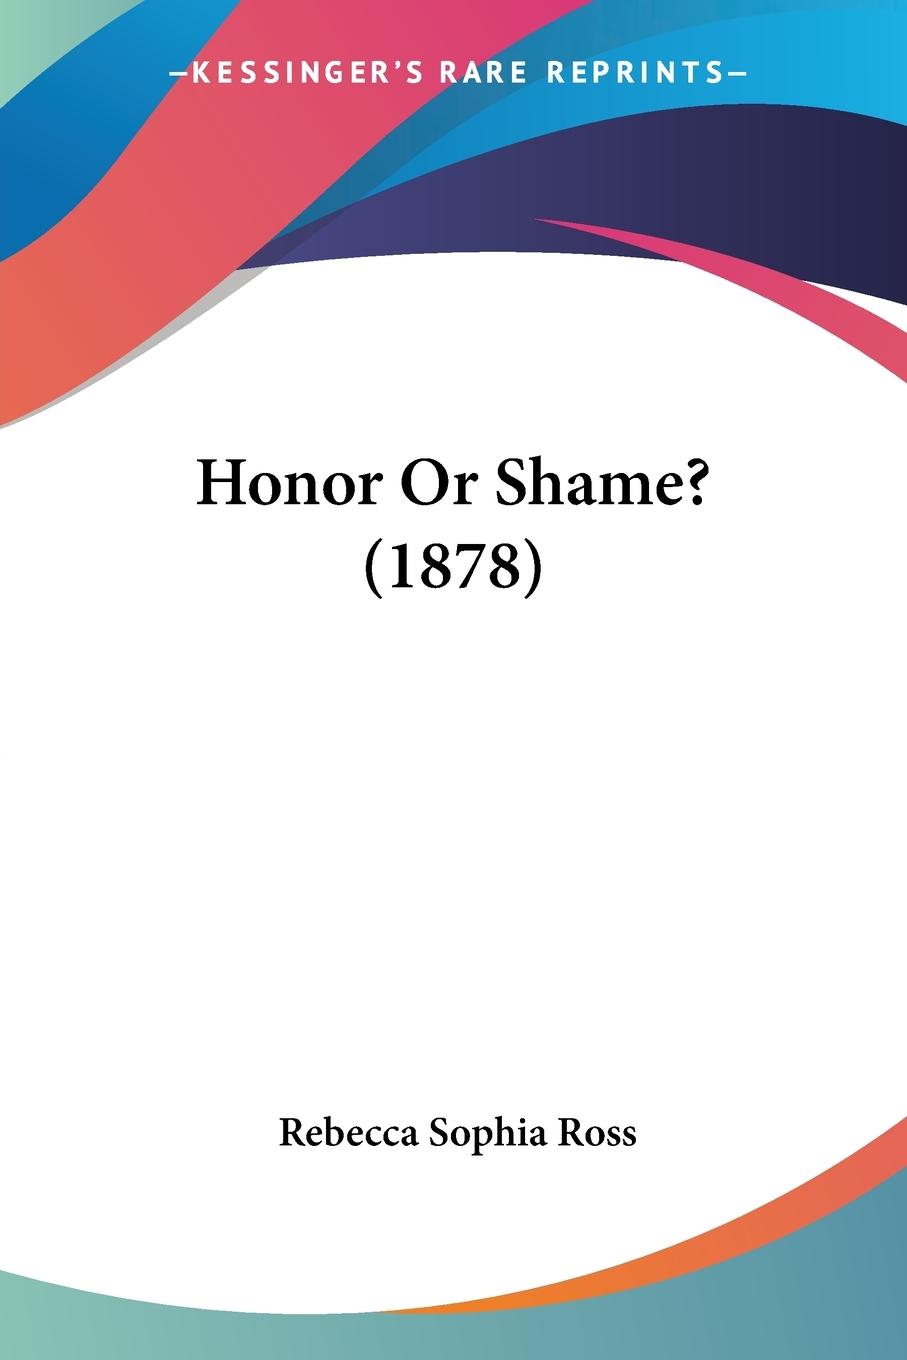 Honor Or Shame? (1878) - Ross, Rebecca Sophia